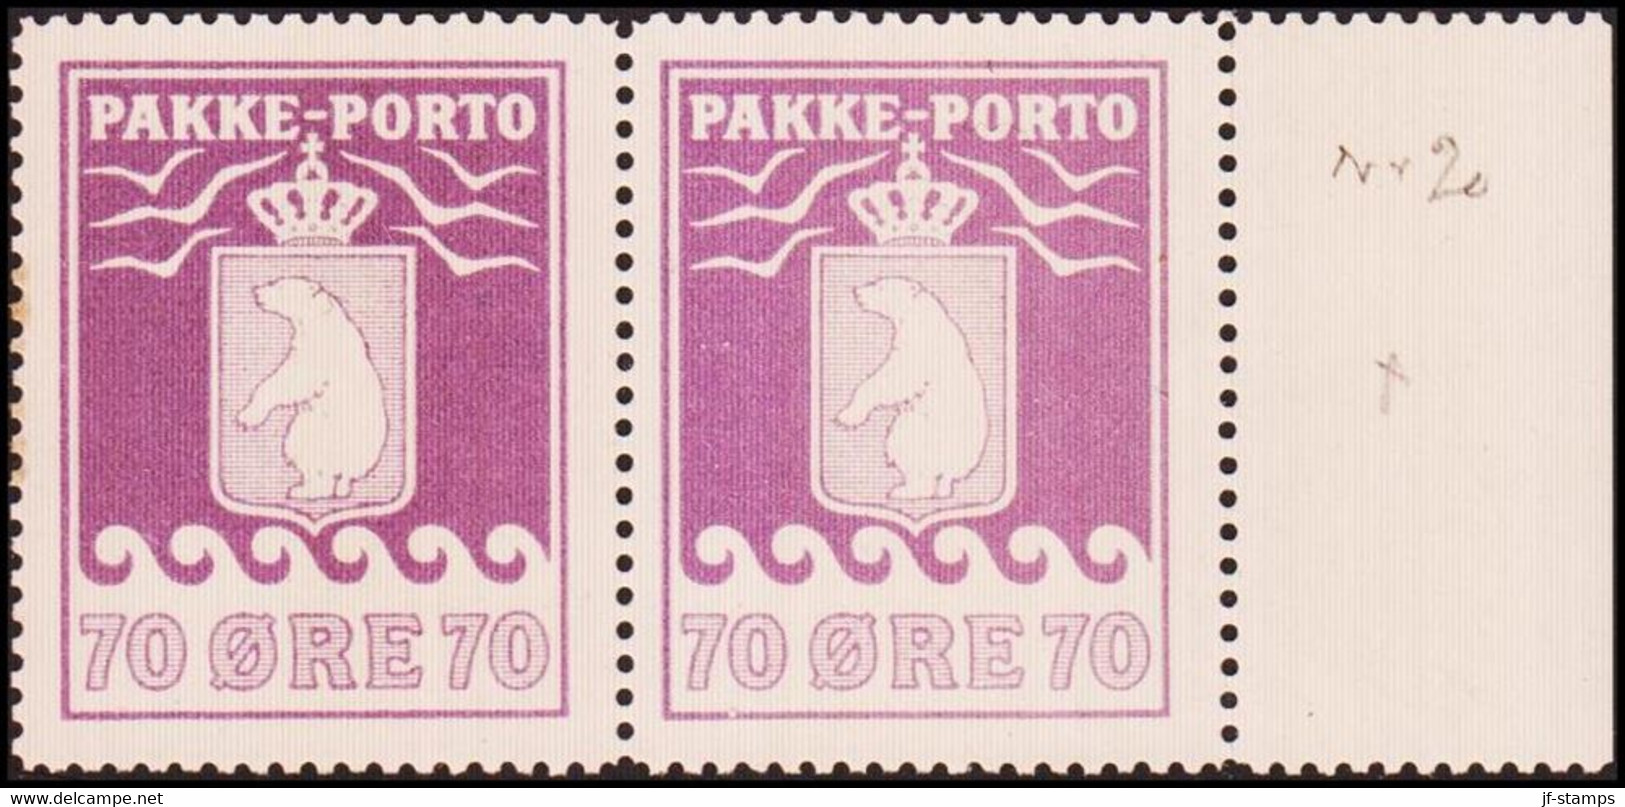 1937. PAKKE PORTO. 70 øre Pale Violet. Andreasen & Lachmann Litho. Perf. 11. Never Hi... (Michel 13) - JF415146 - Colis Postaux